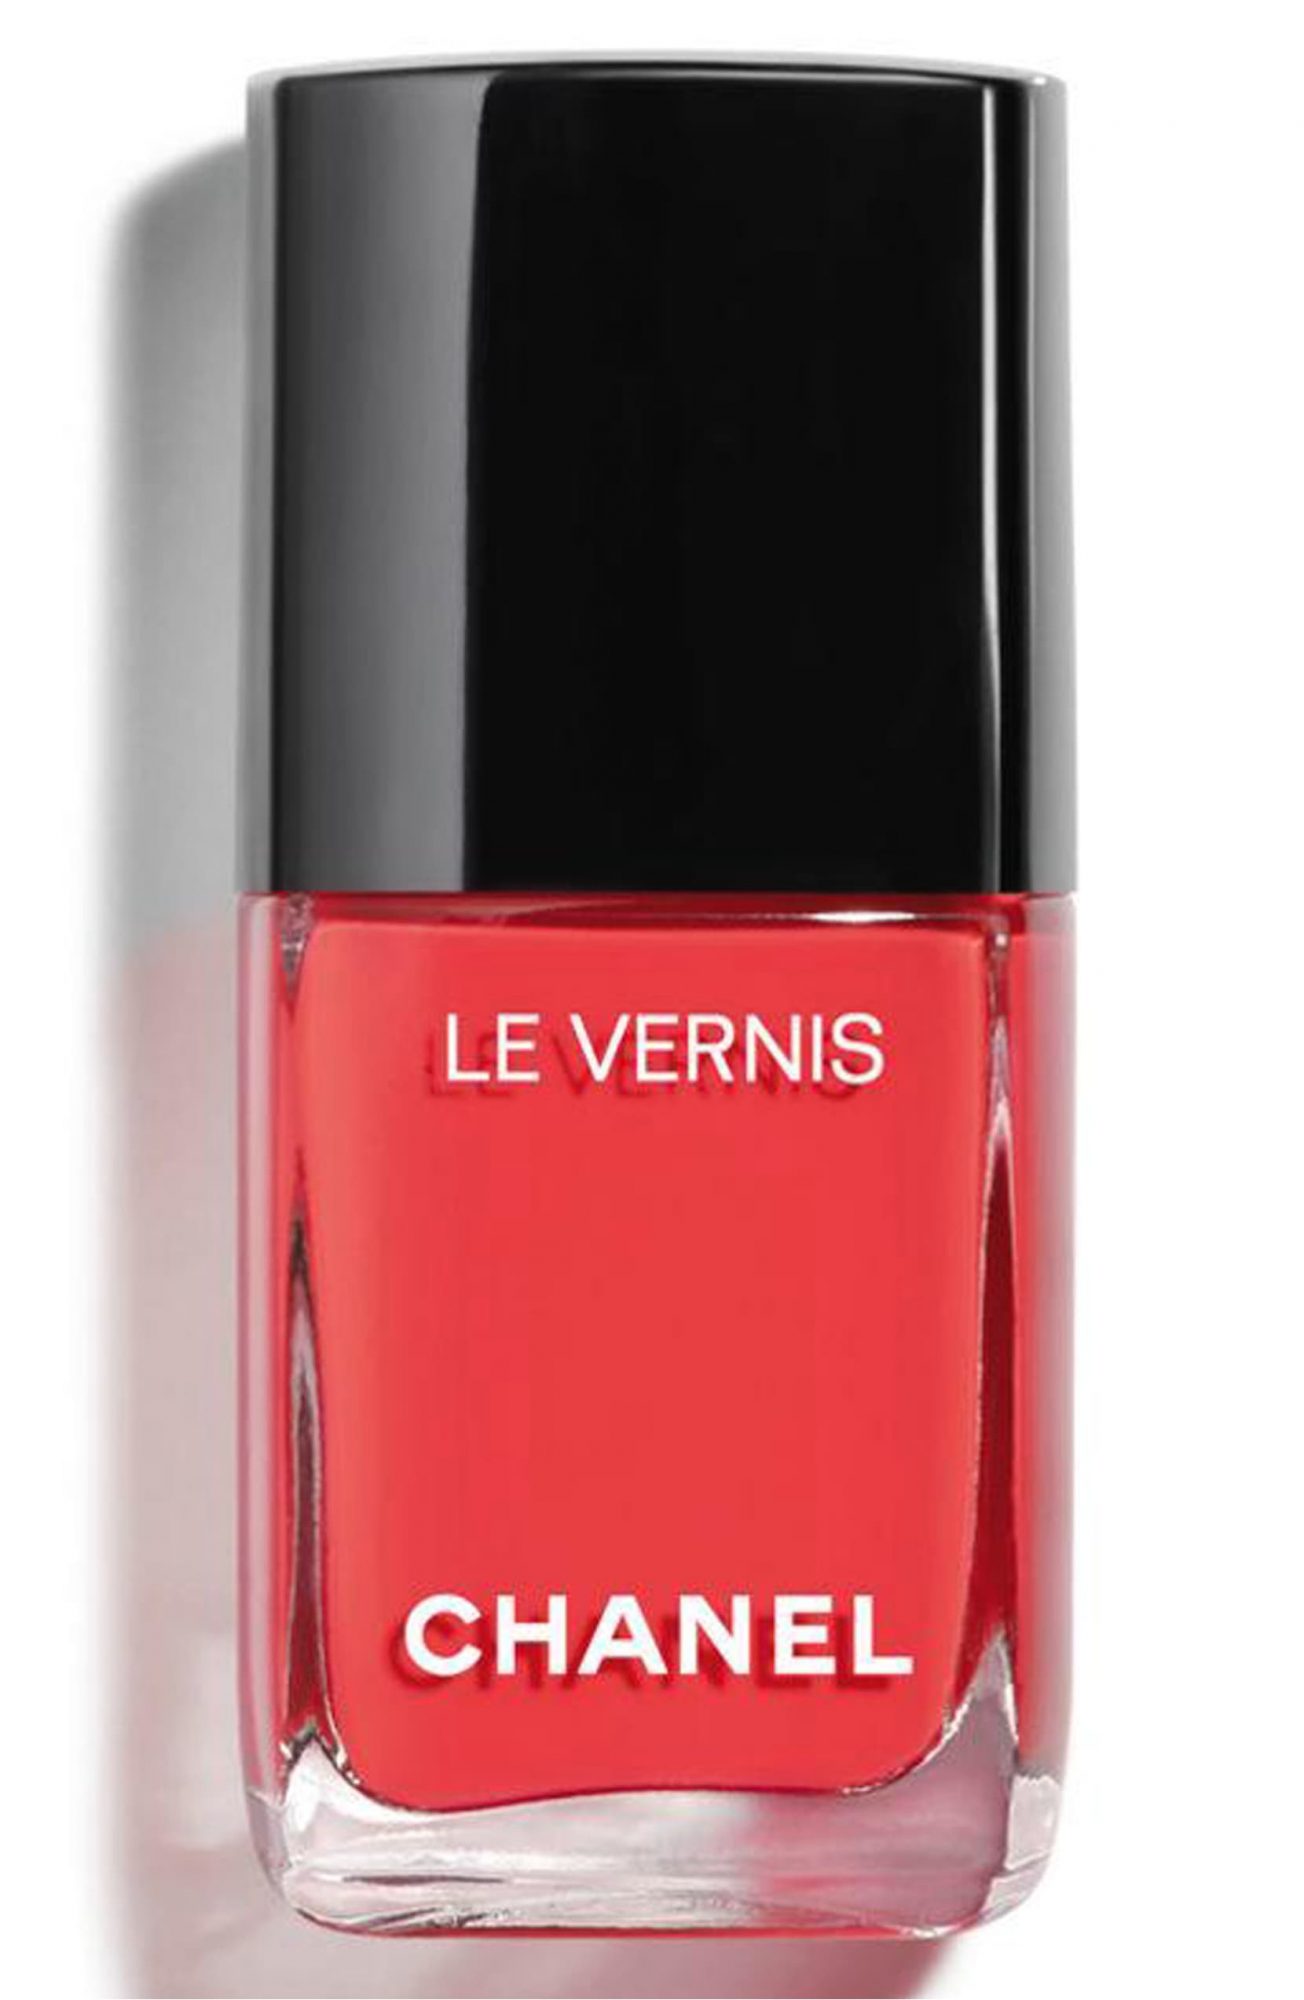 Summer nail polish - Chanel